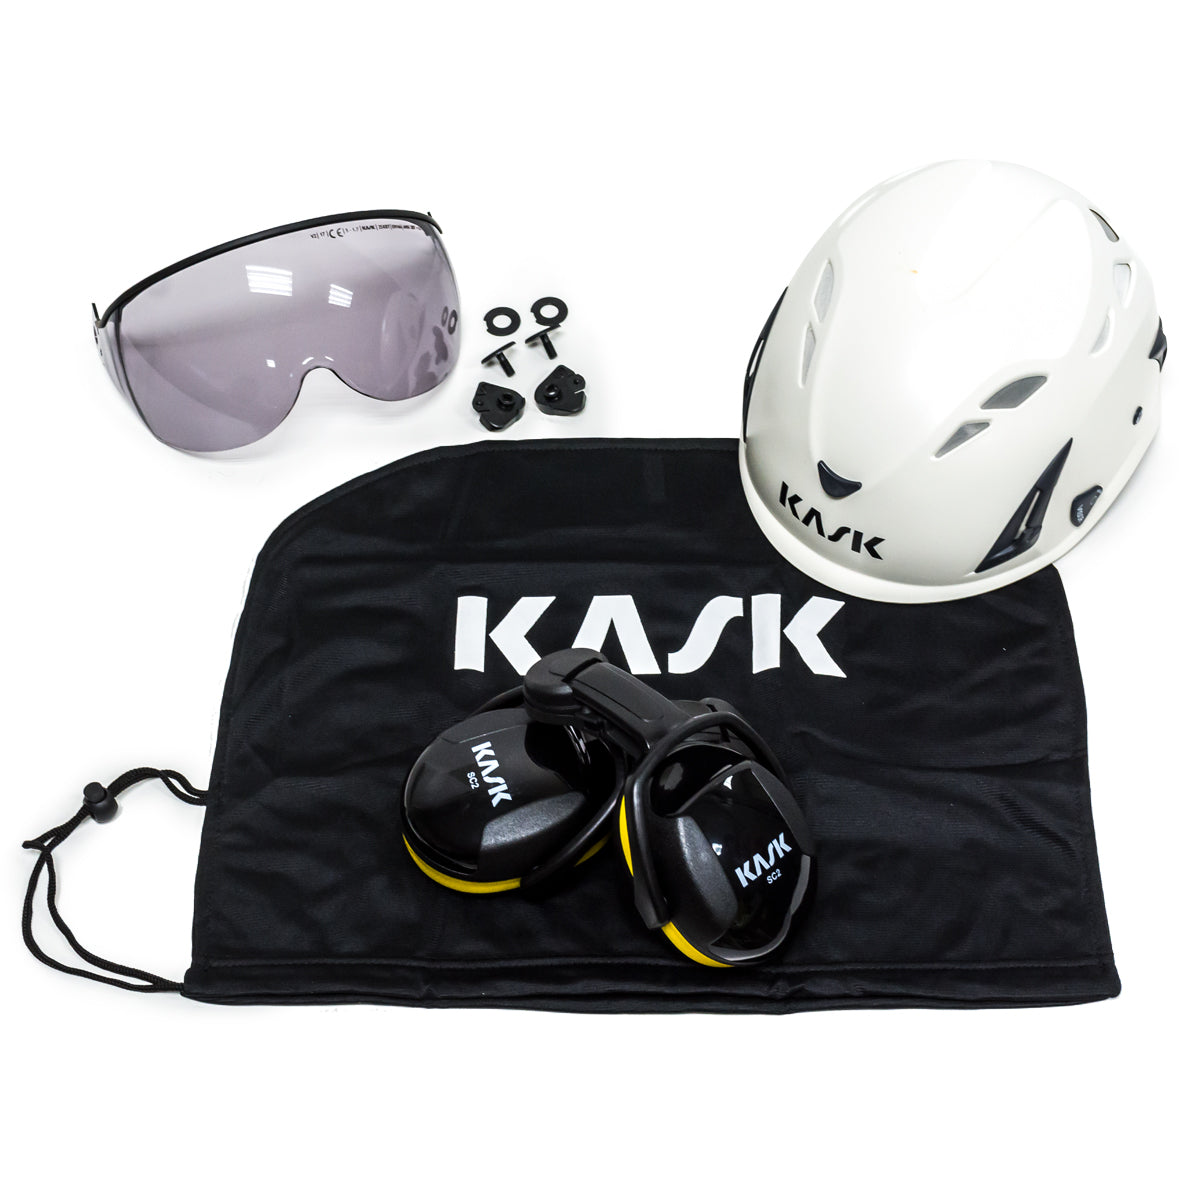 Kask Professional Arborist White Super Plasma Helmet Kit